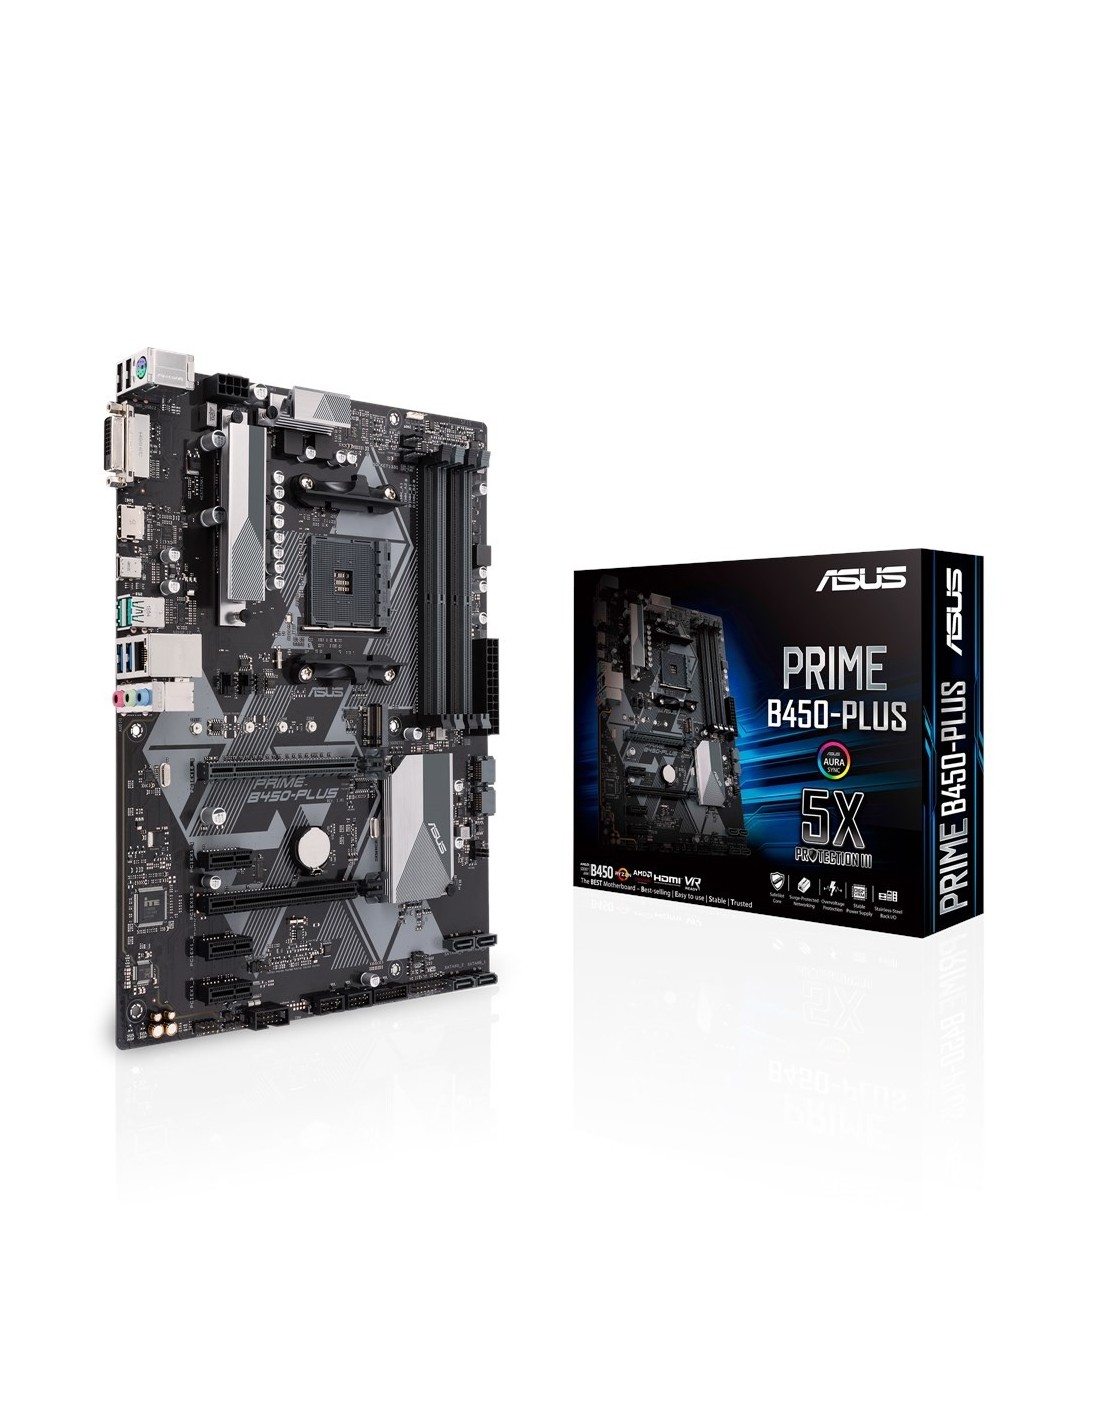 Asus Prime B450 Plus DDR4 Negra